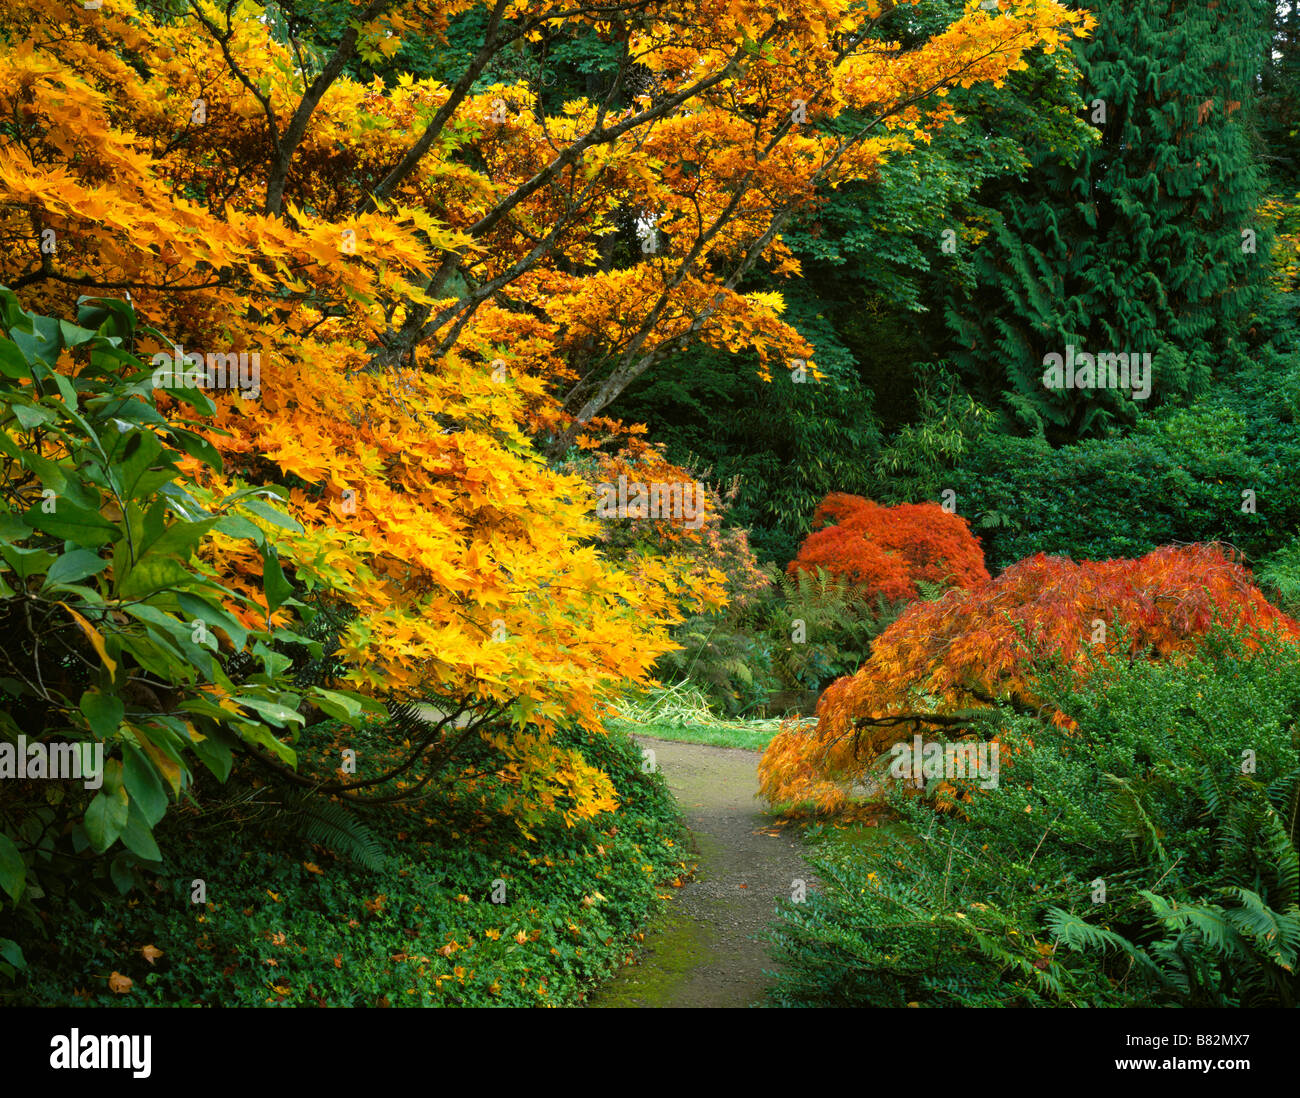 Kubota Garten Seattle Ackermann verschiedene japanische Ahorne in brillanter Herbst Farben Grenze einen einsamen Weg im Garten Stockfoto